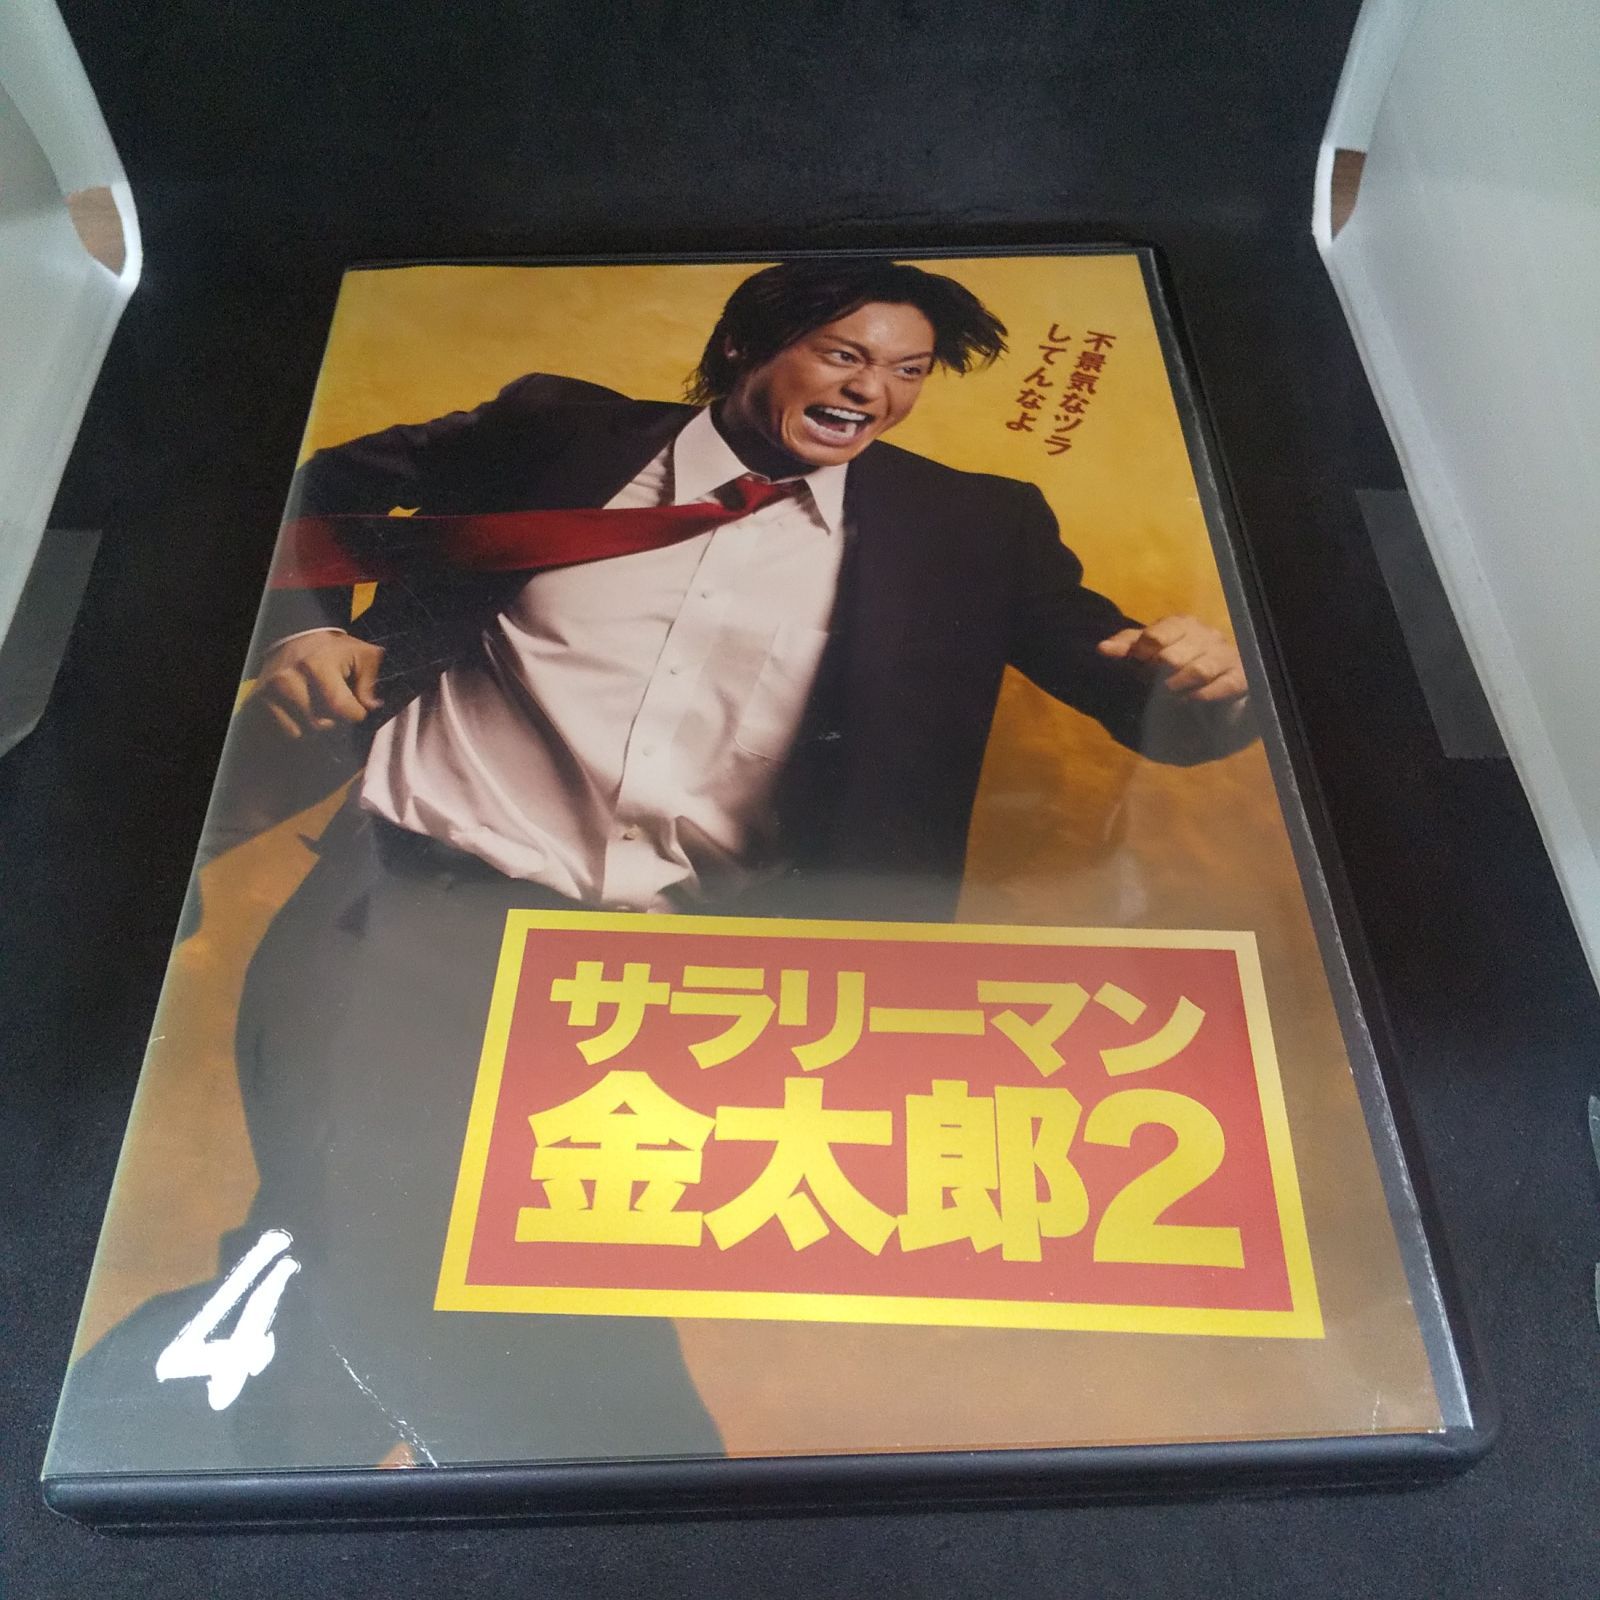 サラリーマン金太郎2 Vol.4 レンタル専用 中古 DVD ケース付き - メルカリ